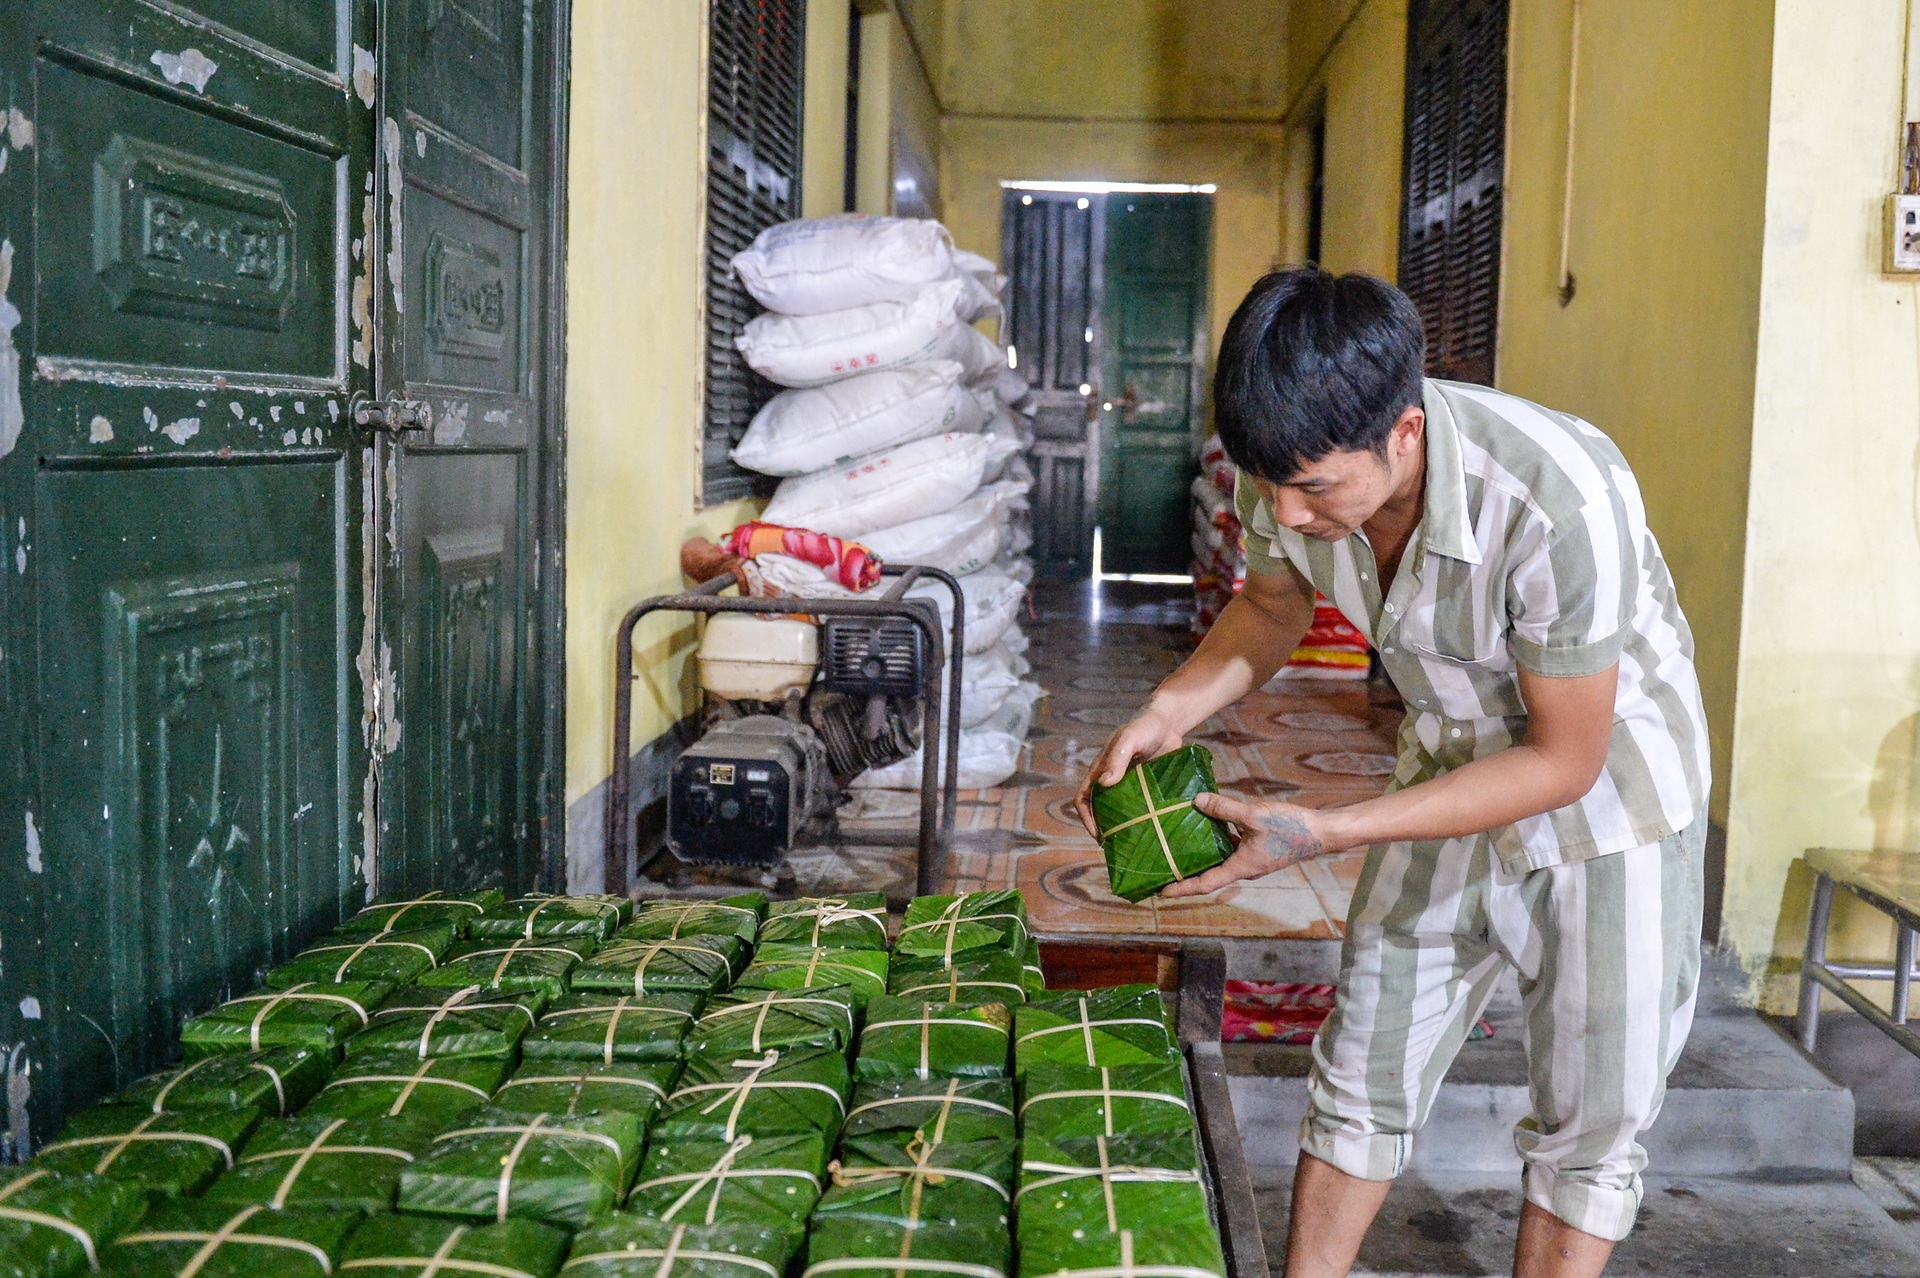 Phạm nhân khéo léo gói hàng nghìn bánh chưng đón Tết ở Trại giam Yên Hạ - 7